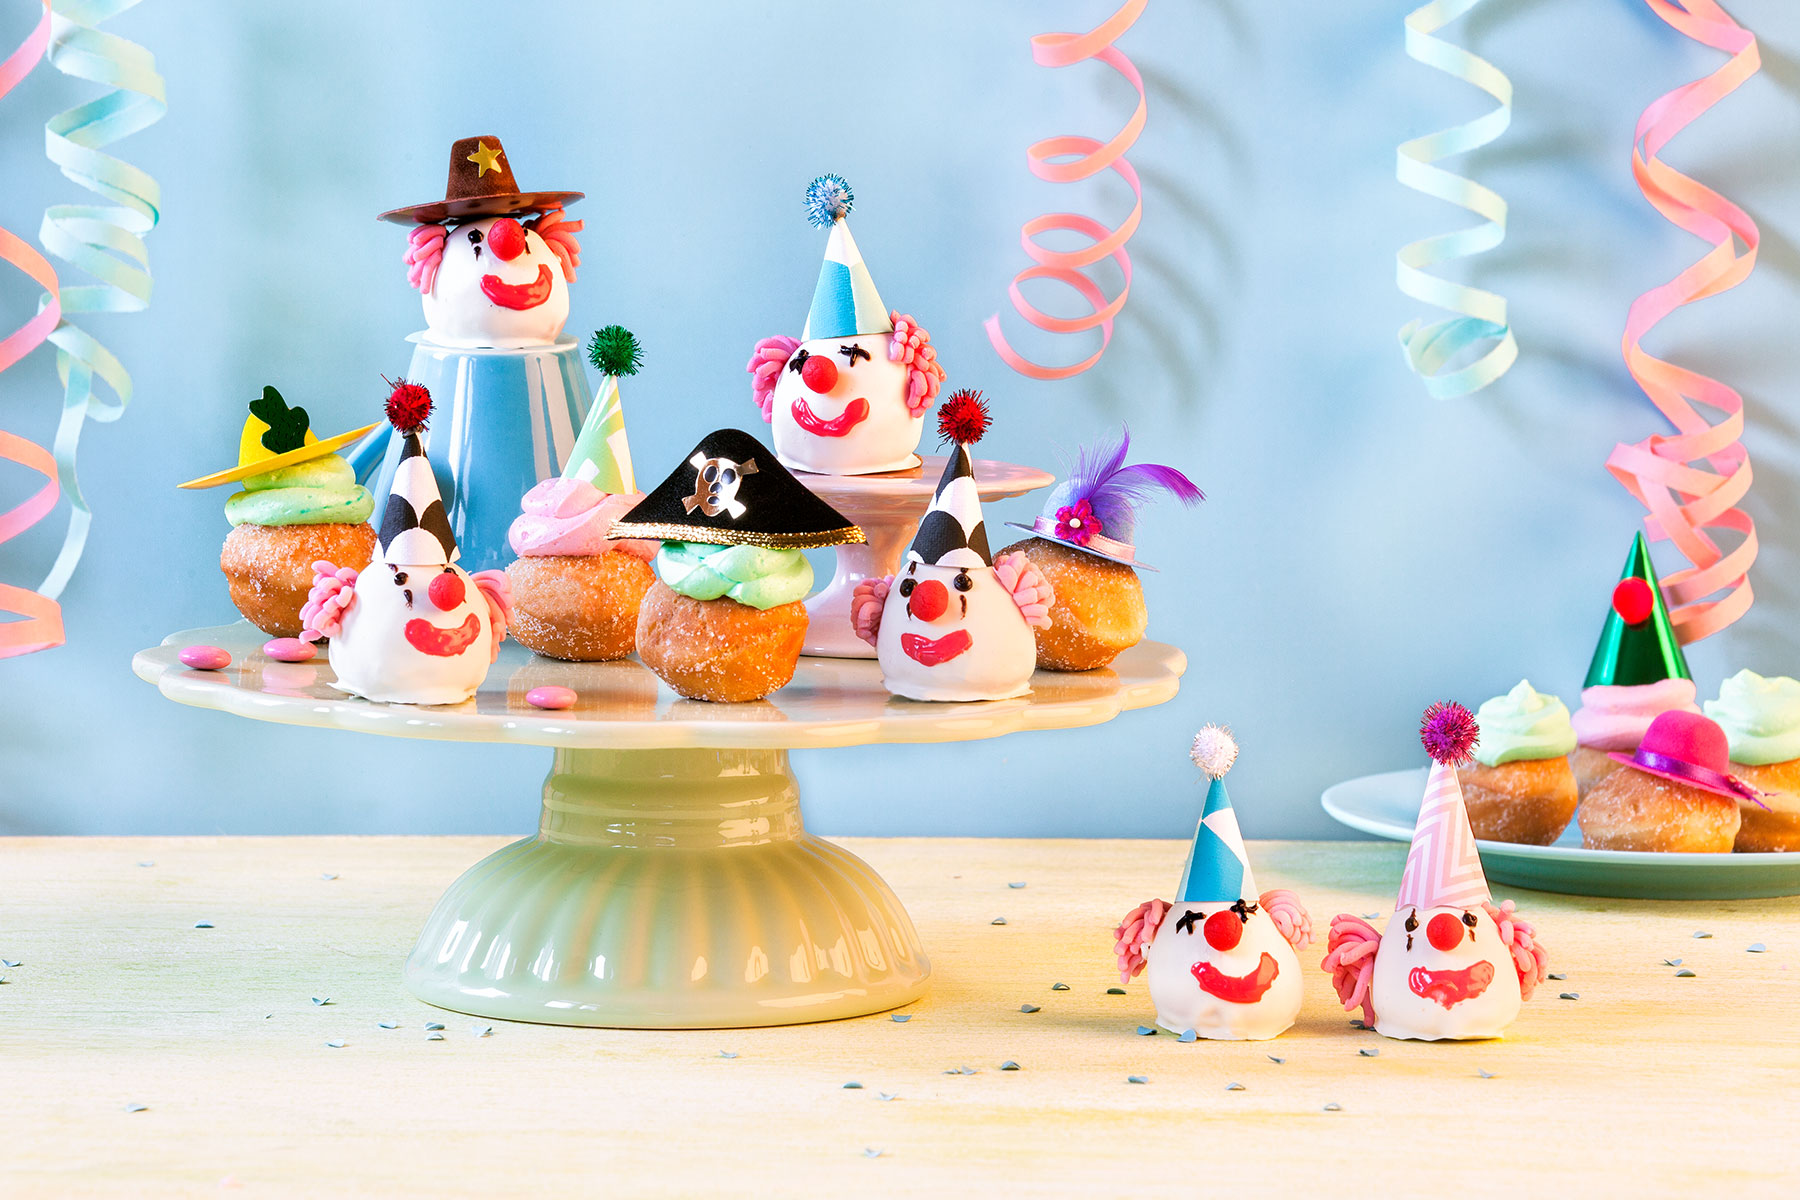 Fun Food zu Karneval – kostümierte Brötchen als Partysnack 1